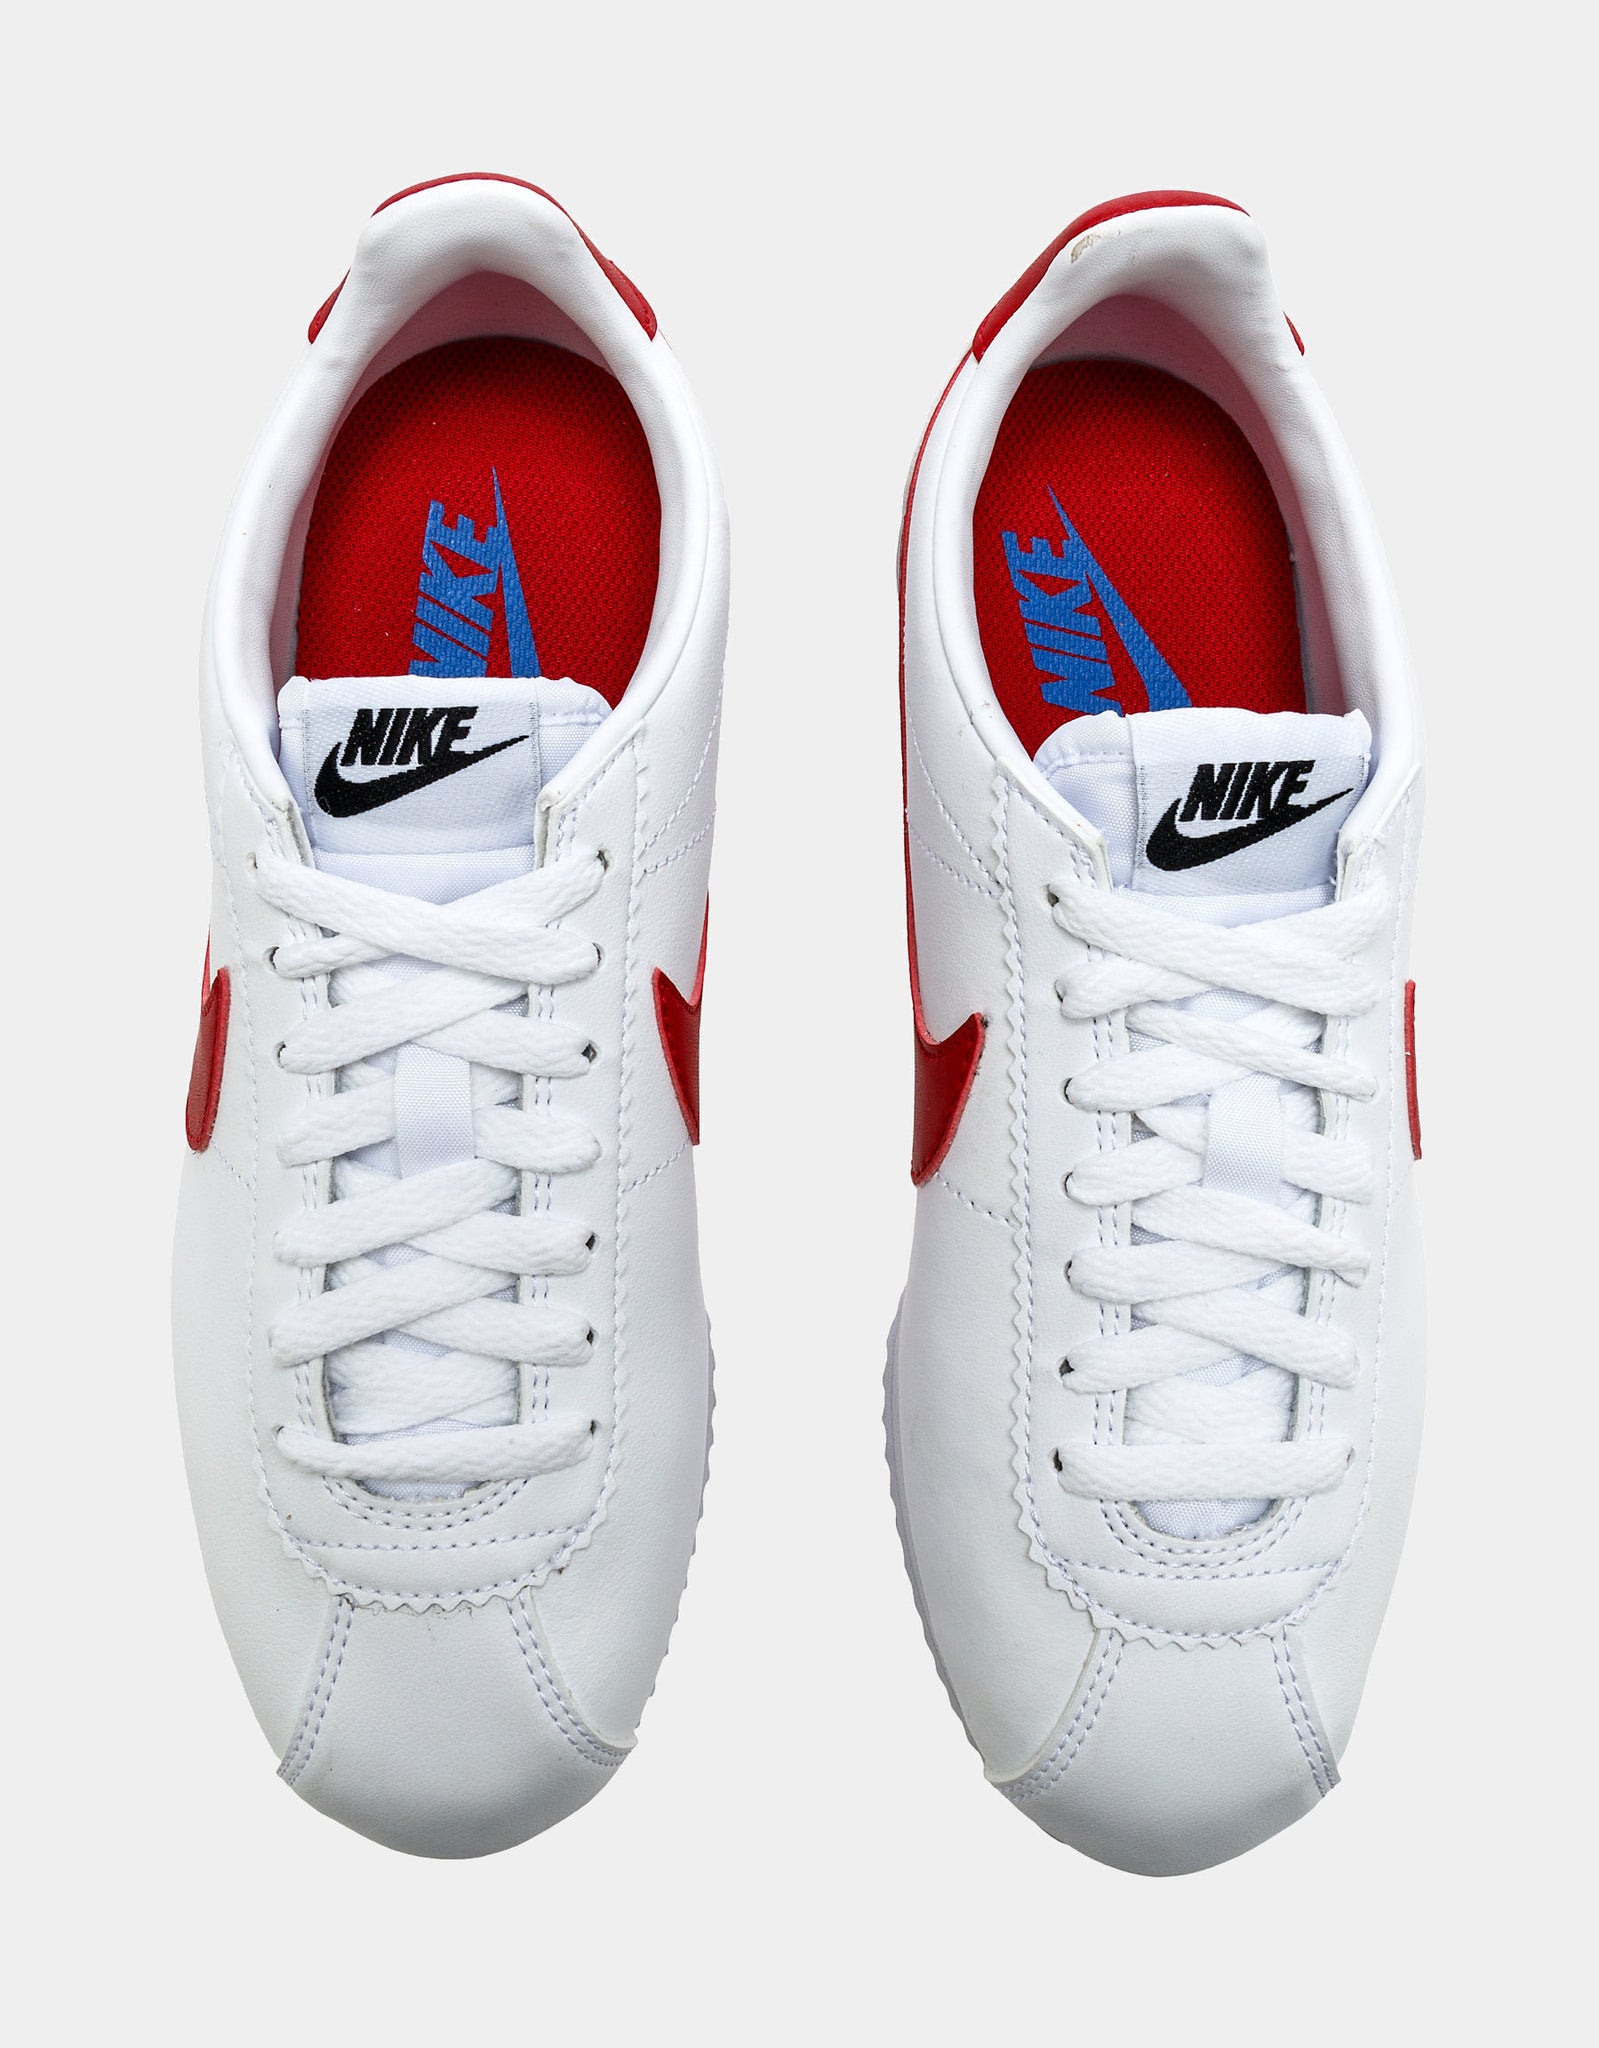 Nike Classic Cortez White Red Crush (Women's) - 807471-108 - US